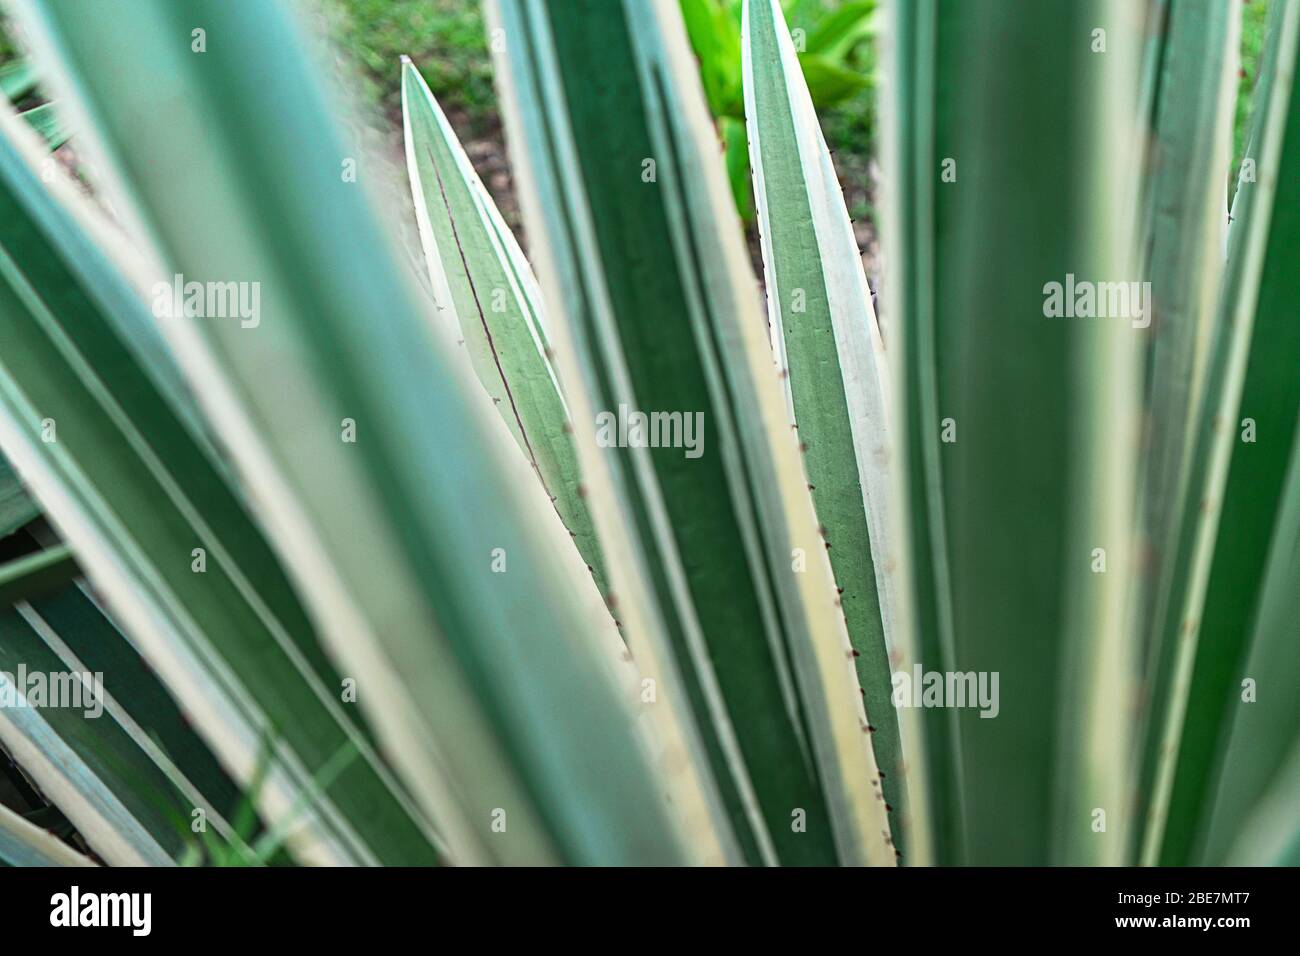 Abstrakt gestreiften natürlichen Hintergrund. Details der spanischen Dolchblätter - yucca gloriosa variegata. Stockfoto